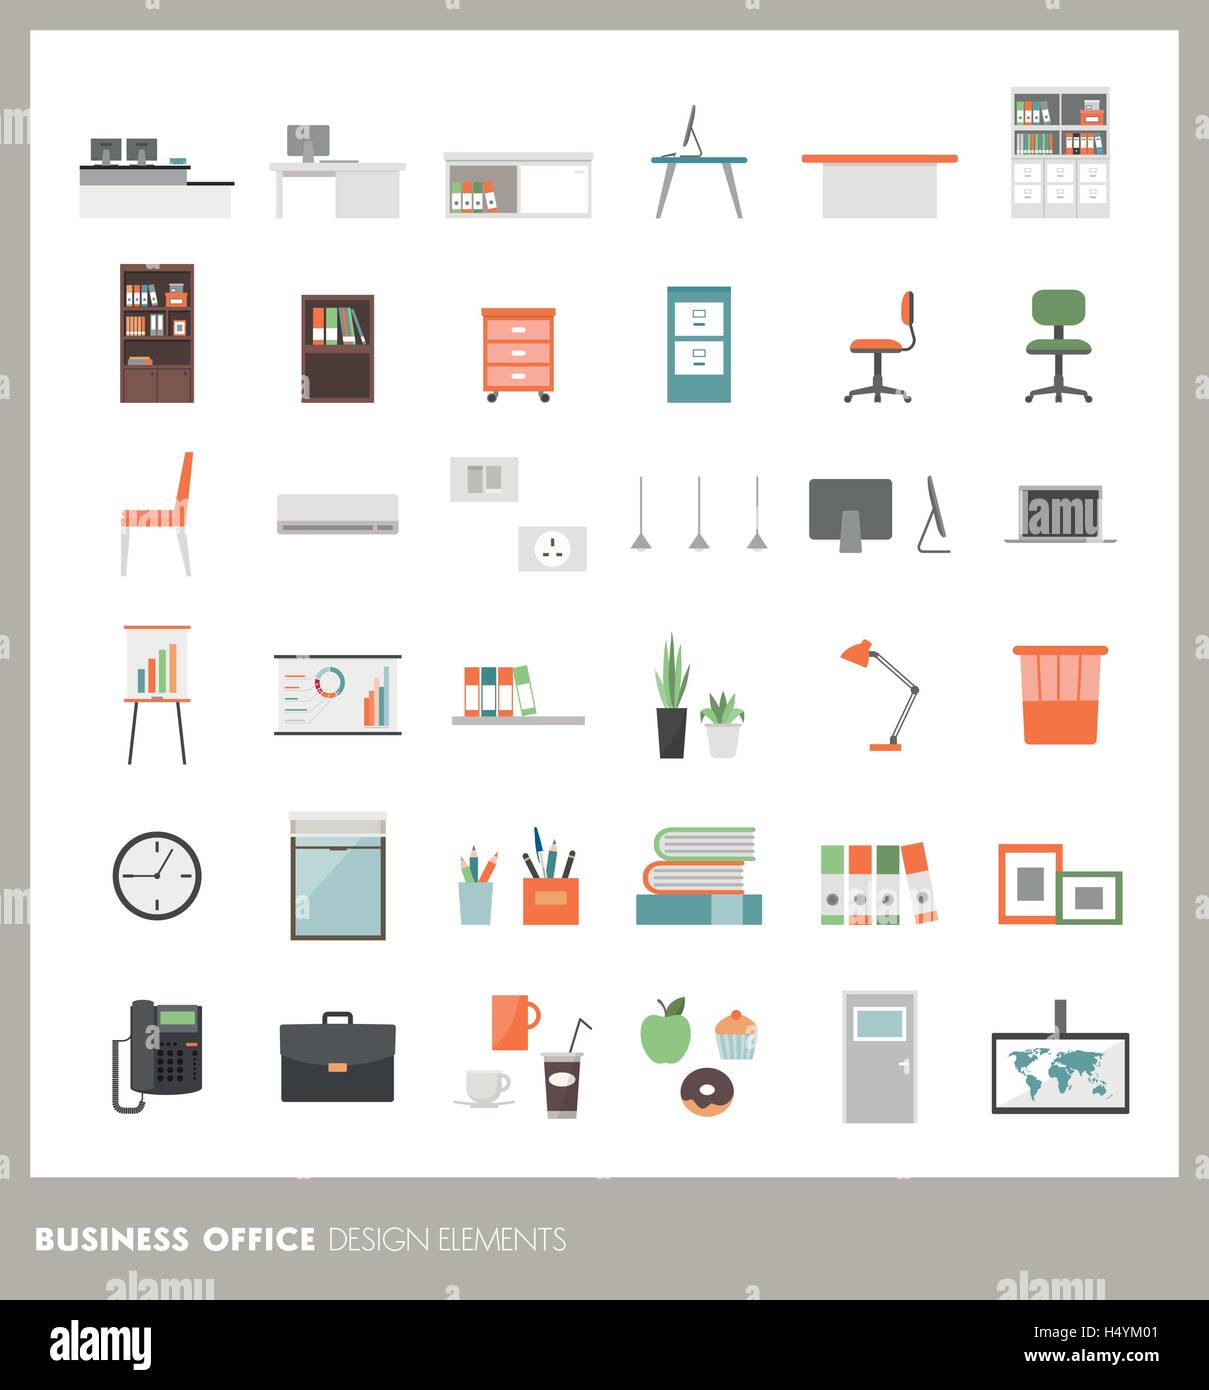 Business office icons set : les objets, les meubles, décorations et de l'électronique Illustration de Vecteur